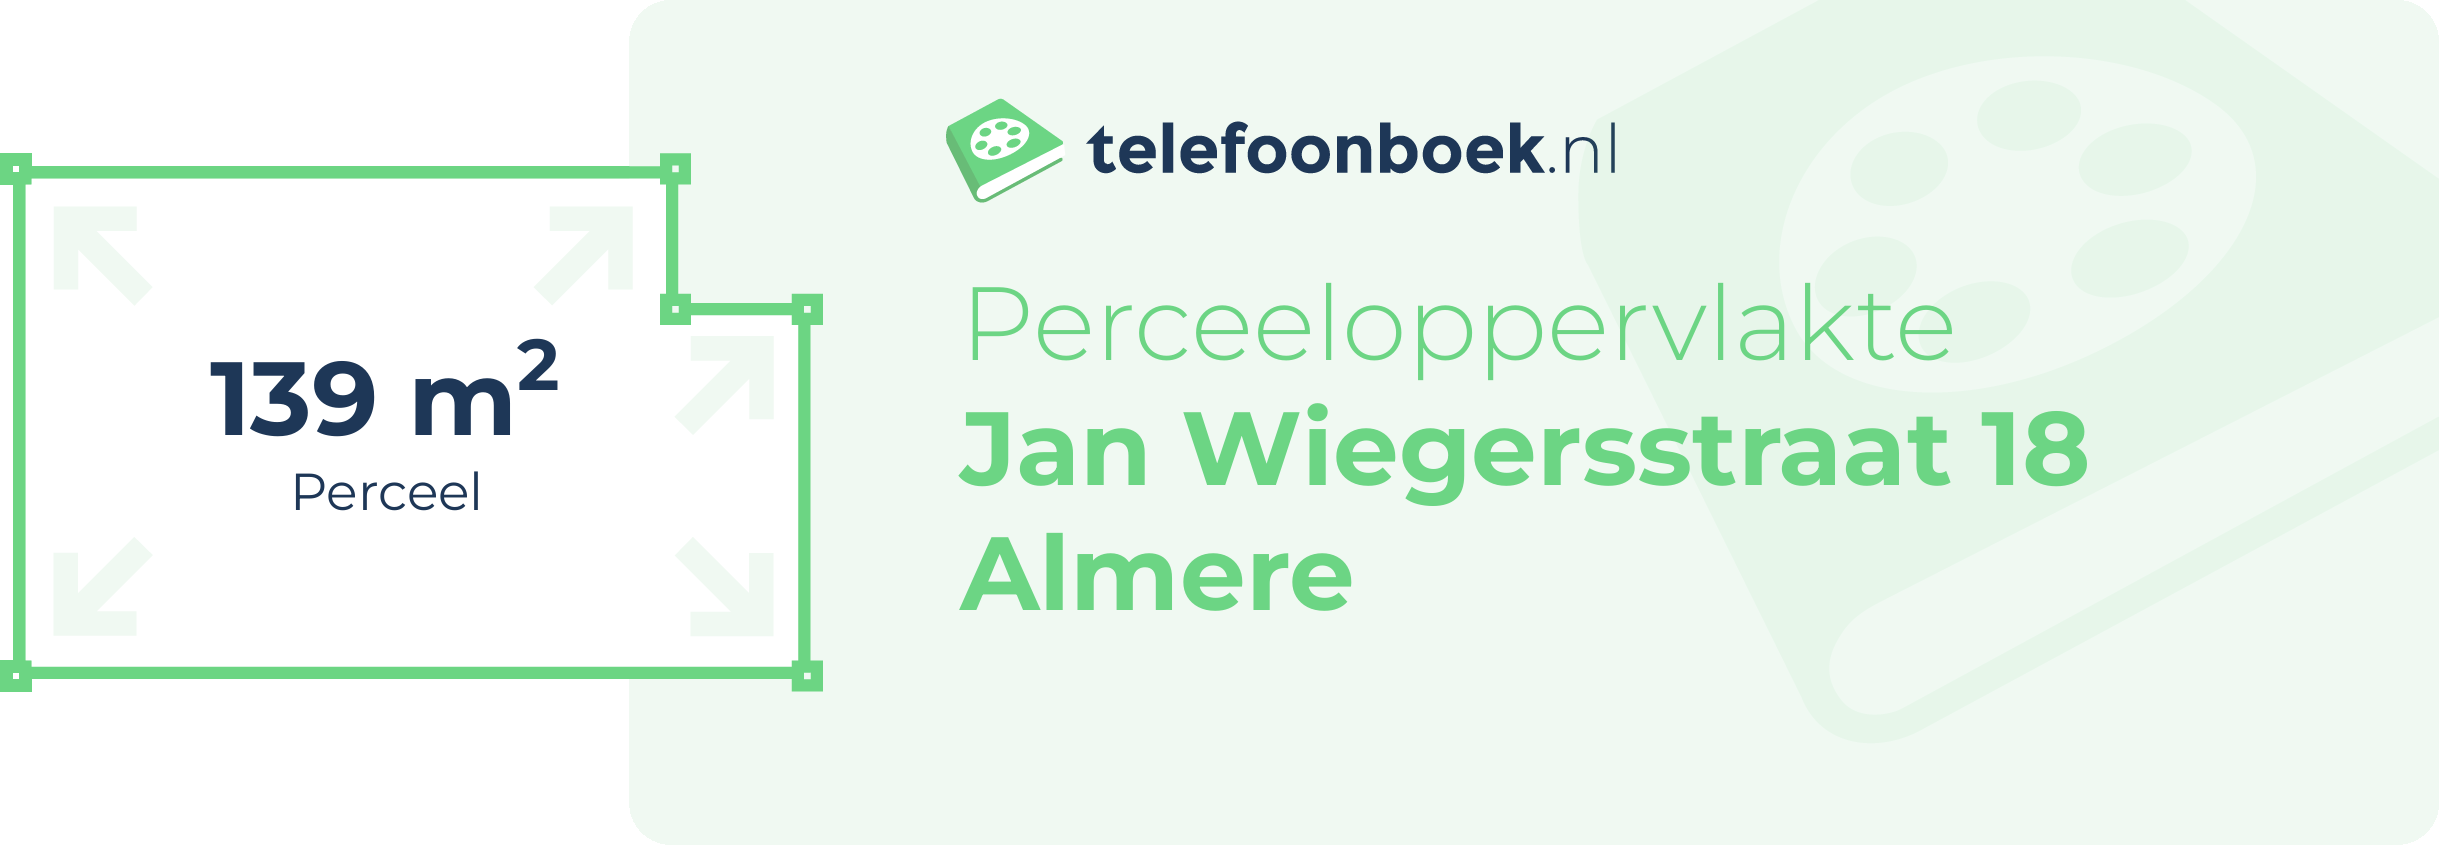 Perceeloppervlakte Jan Wiegersstraat 18 Almere